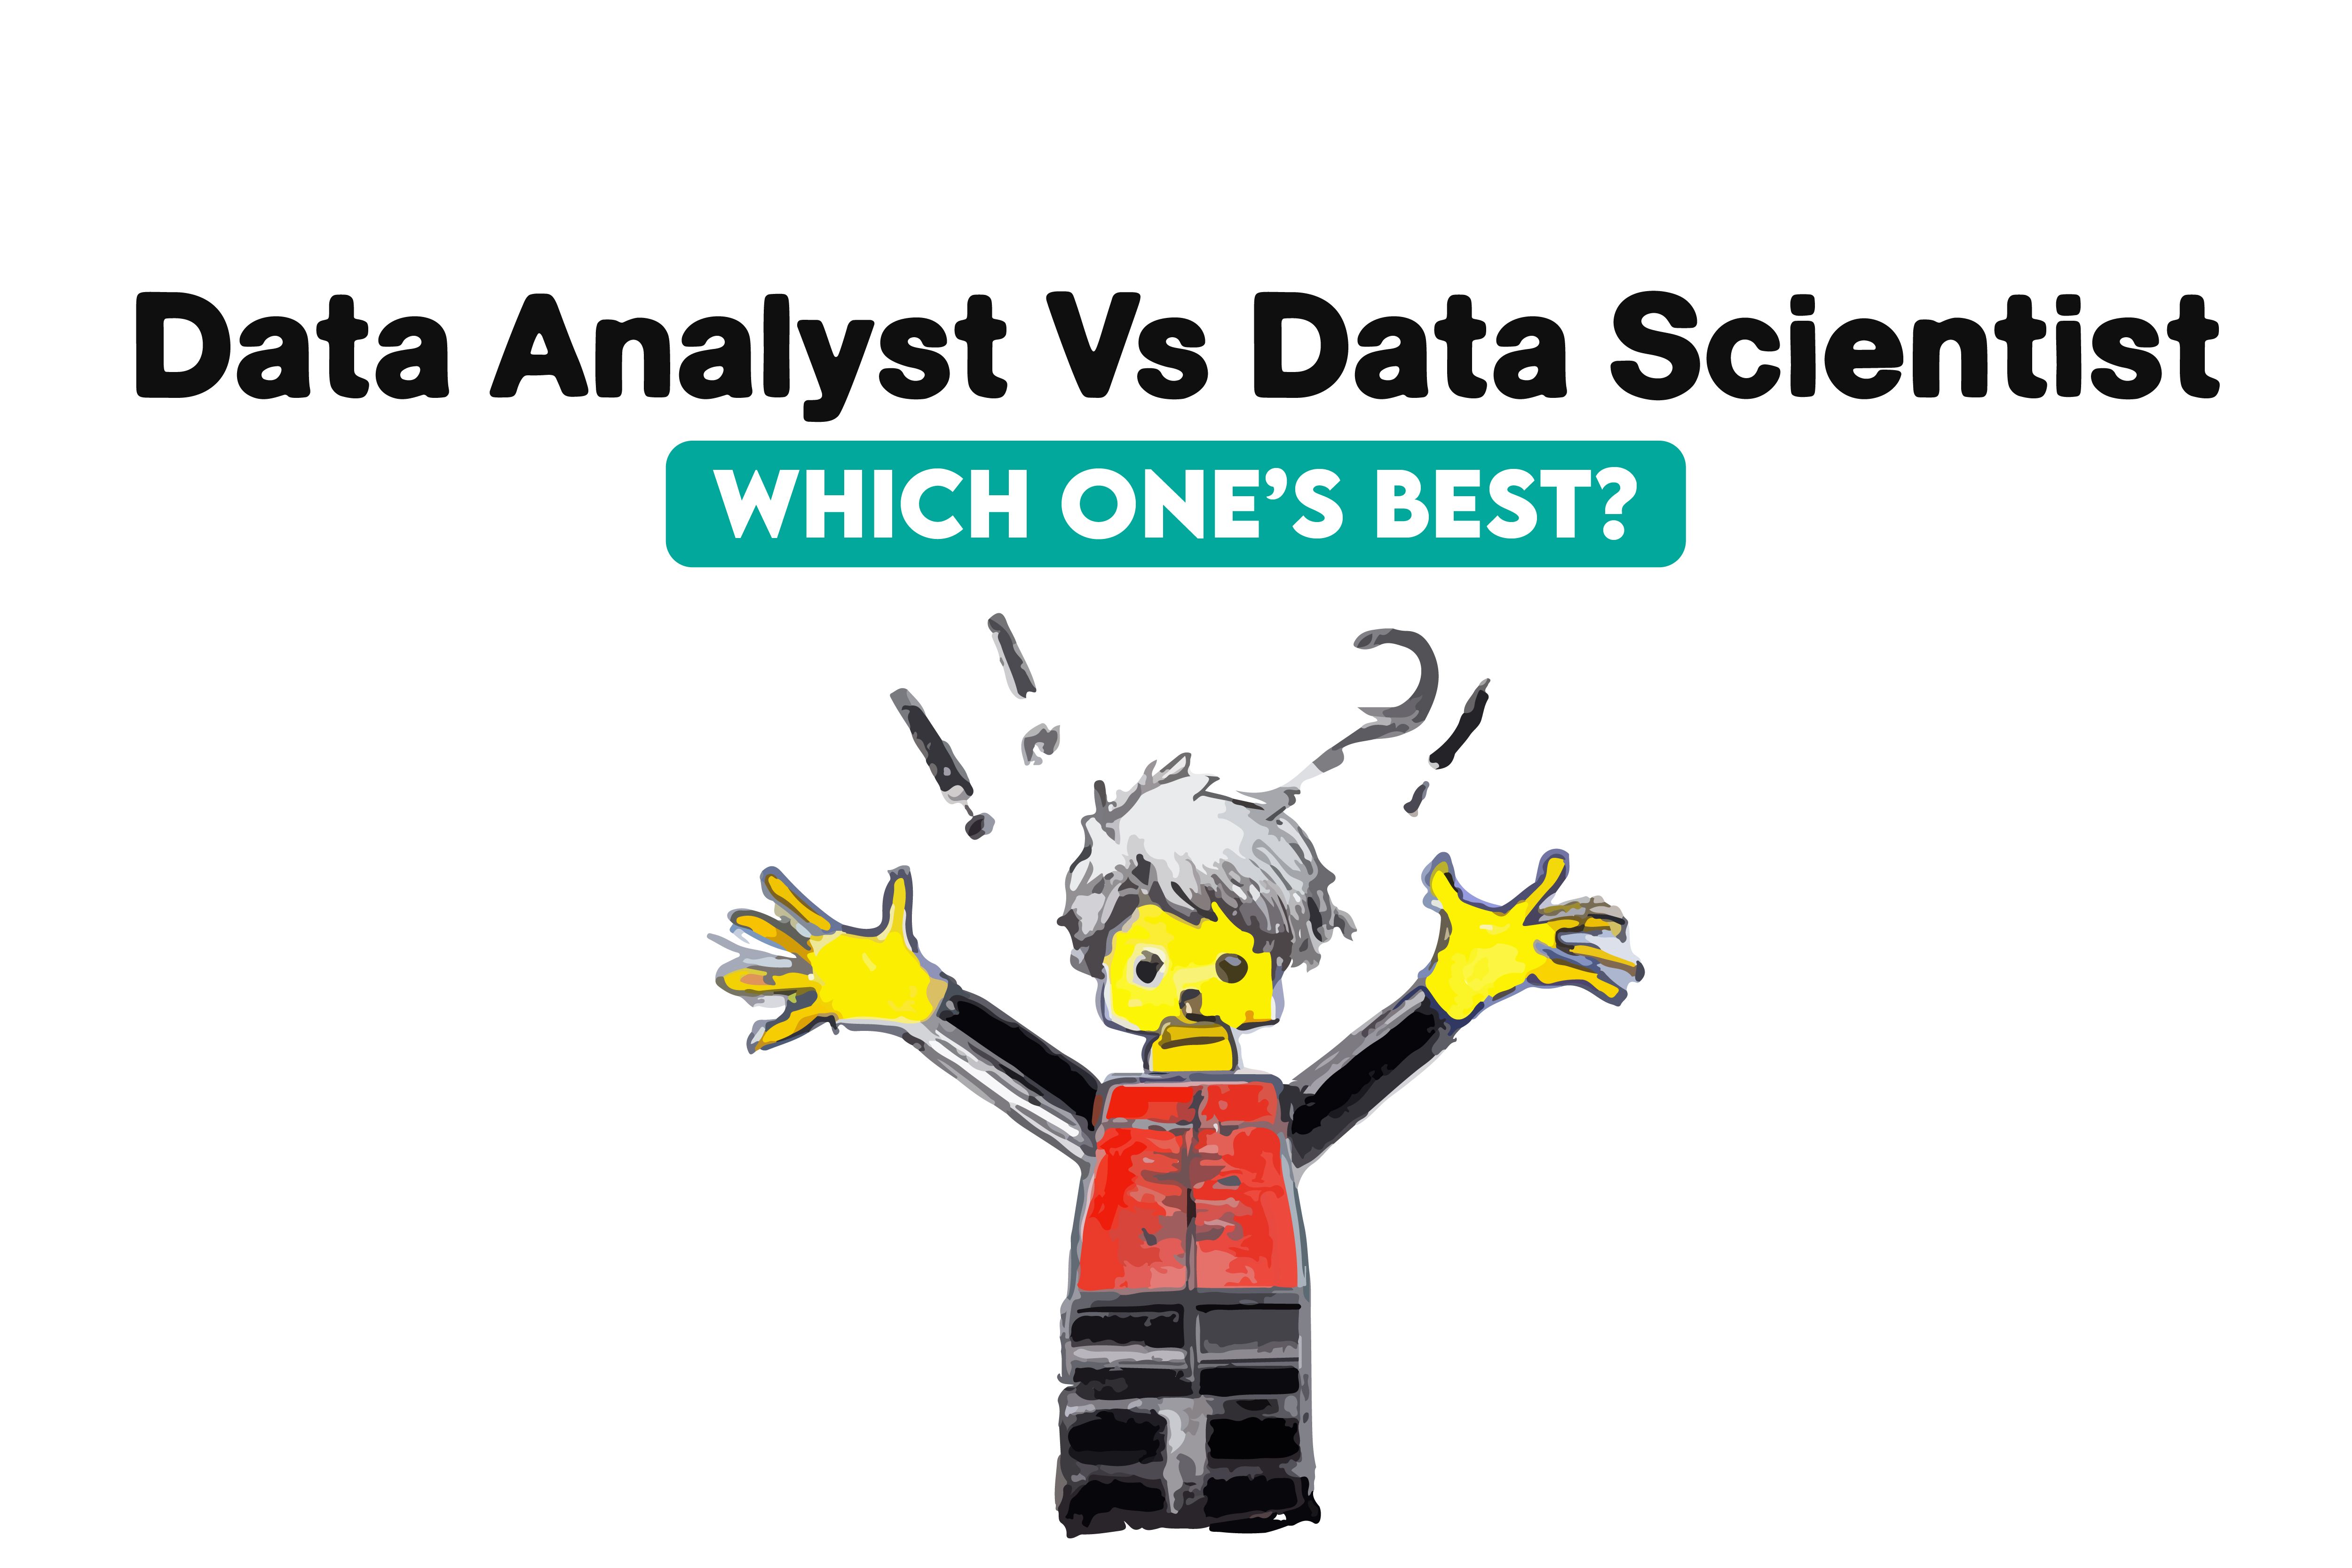 Data analyst vs data scientist which is Best